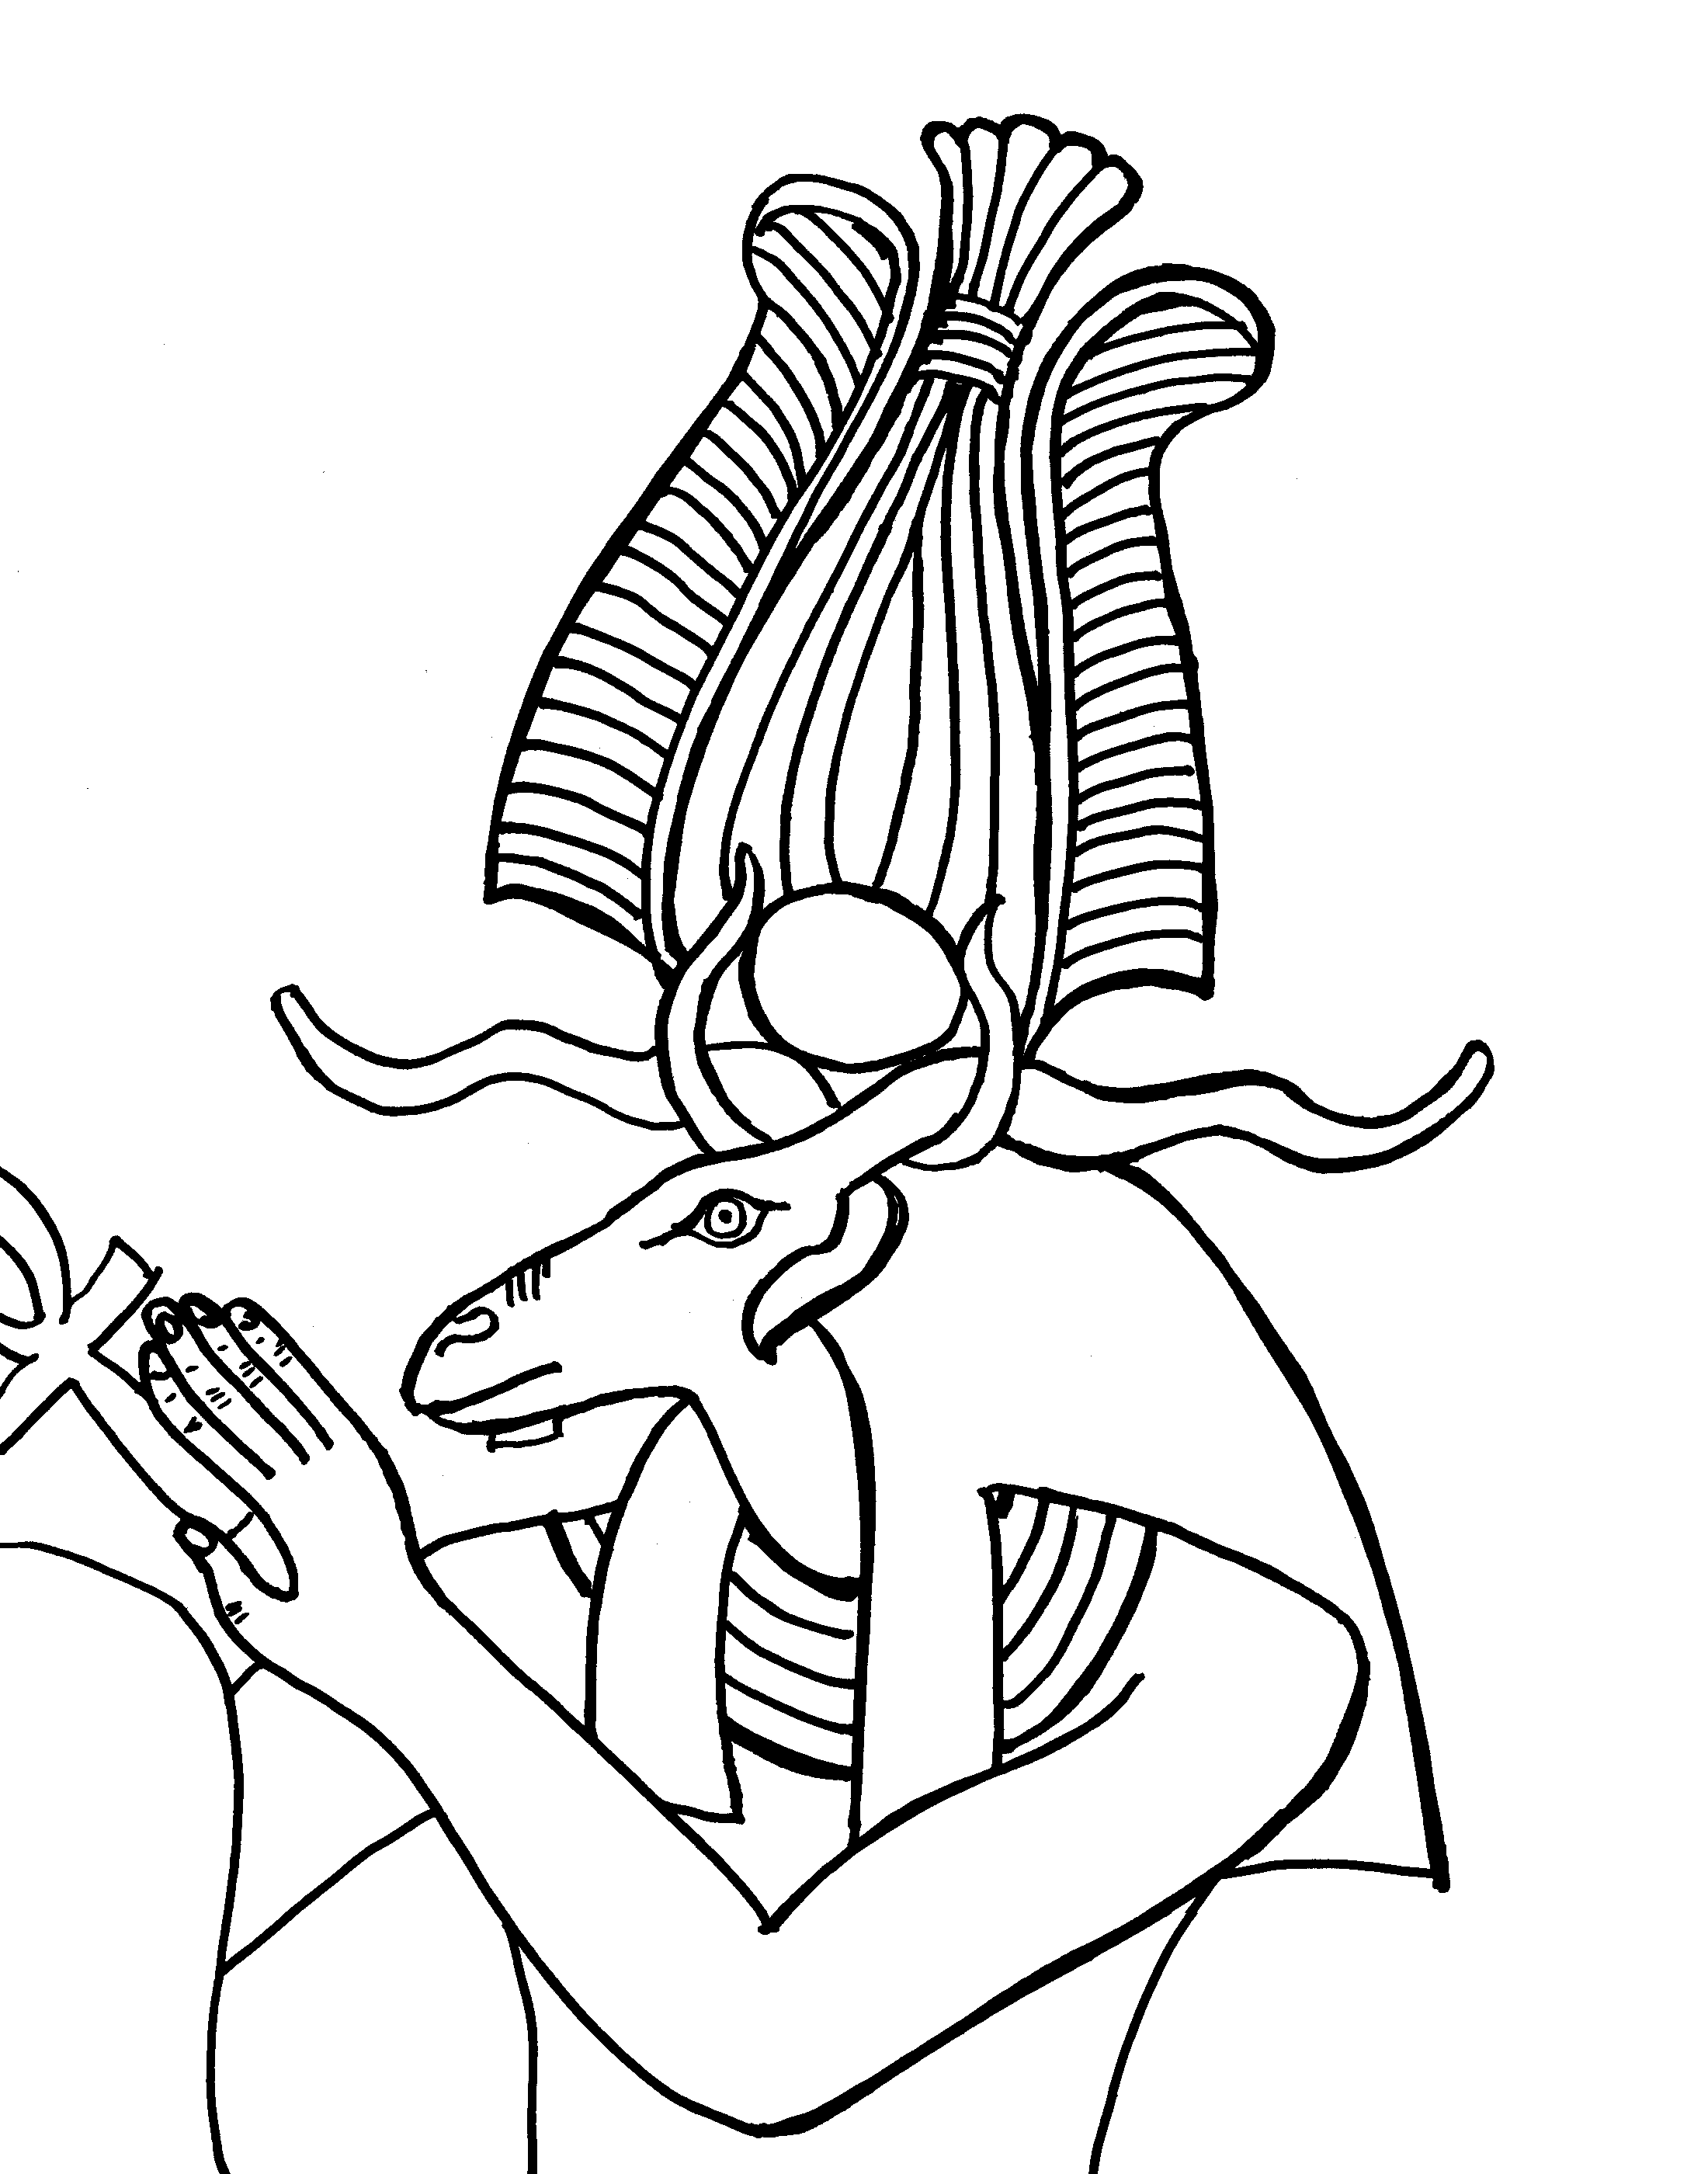 Dibujos de Mitología egipcia Dioses y diosas para colorear y pintar Páginas para